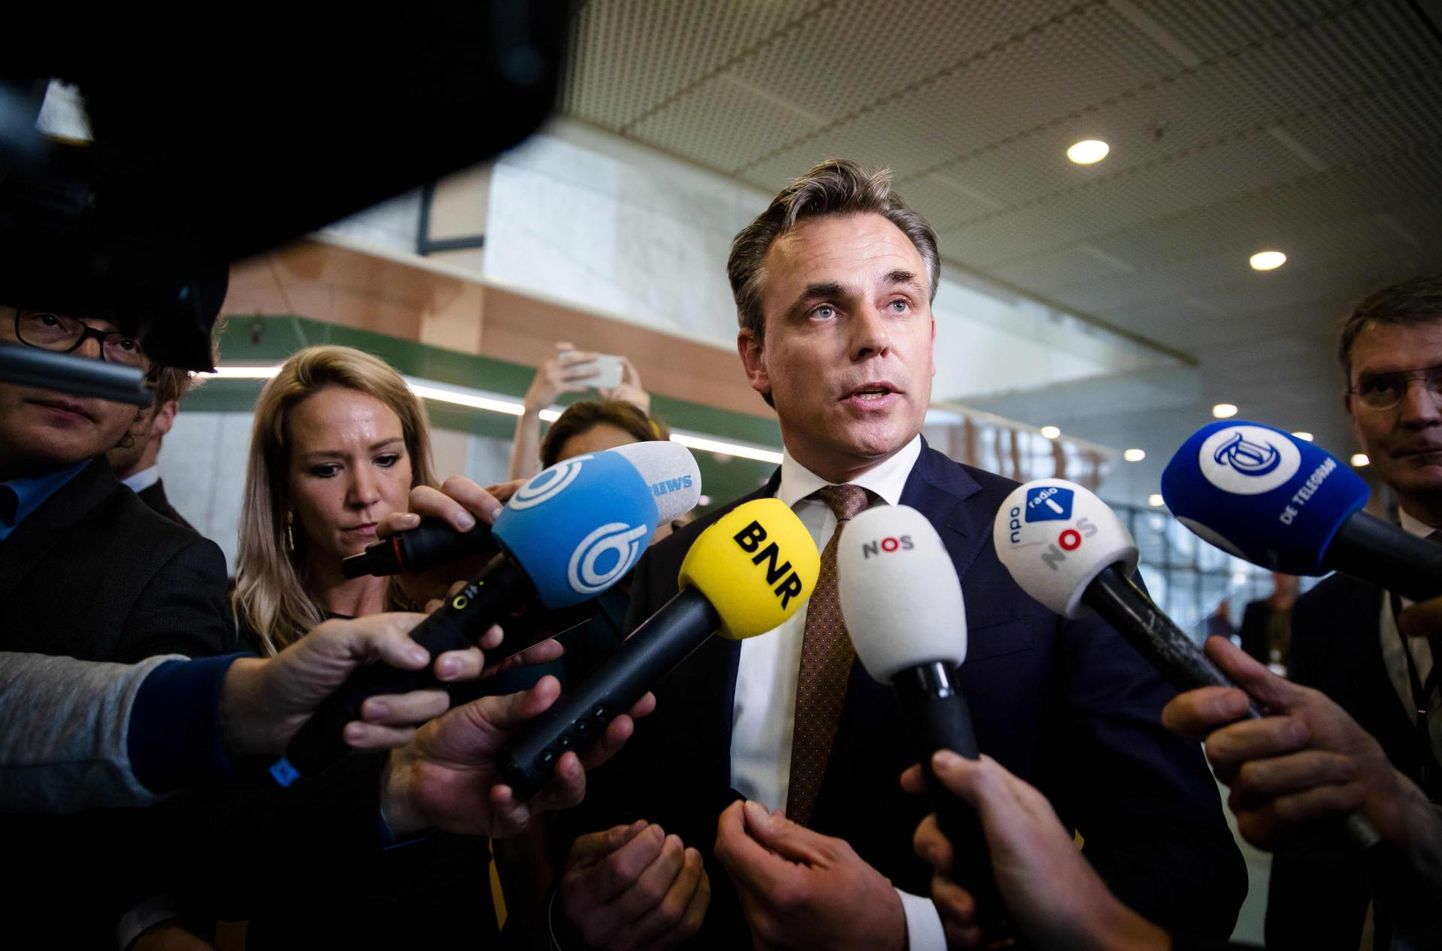 Mark Harbers lahkus Hollandi migratsiooniministri ametist pärast seda, kui talle said osaks süüdistused asüülitaotlejate kuritegude varjamises.